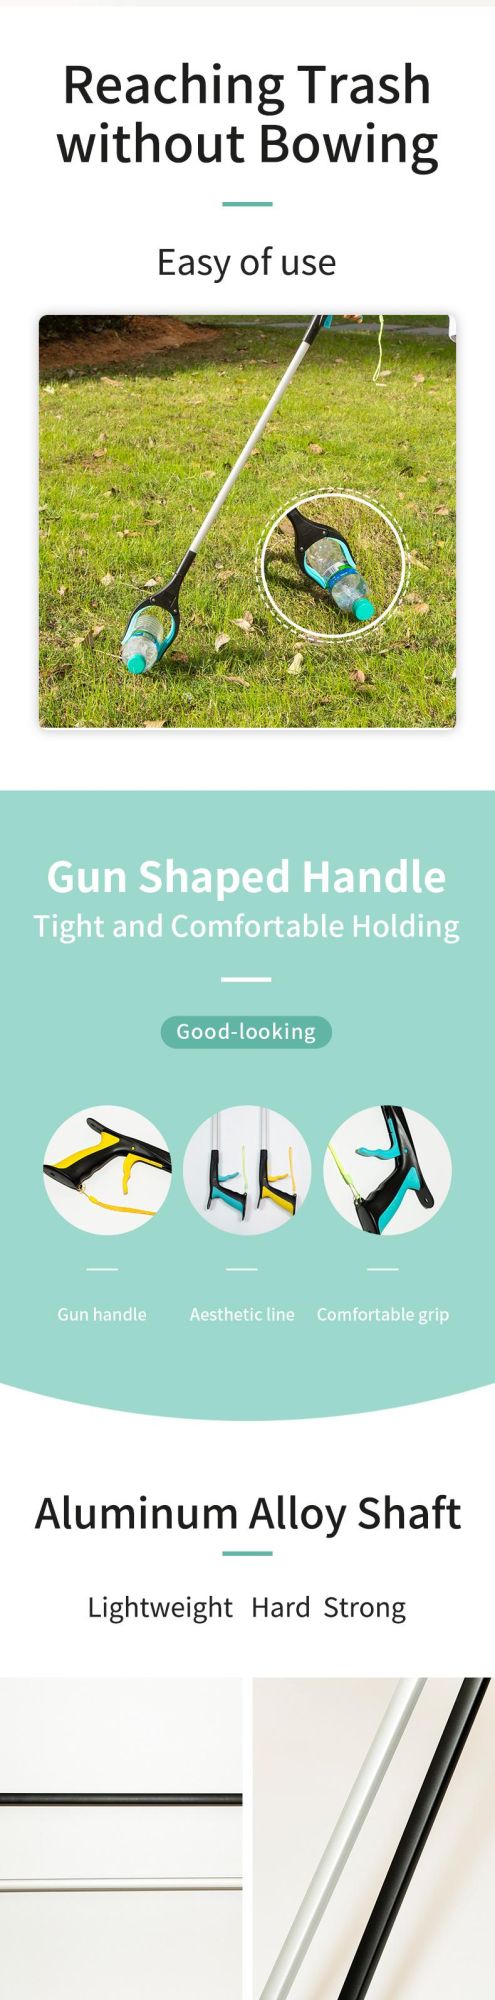 Portable Arm Extending Extra Long Shaft Reacher Grabber